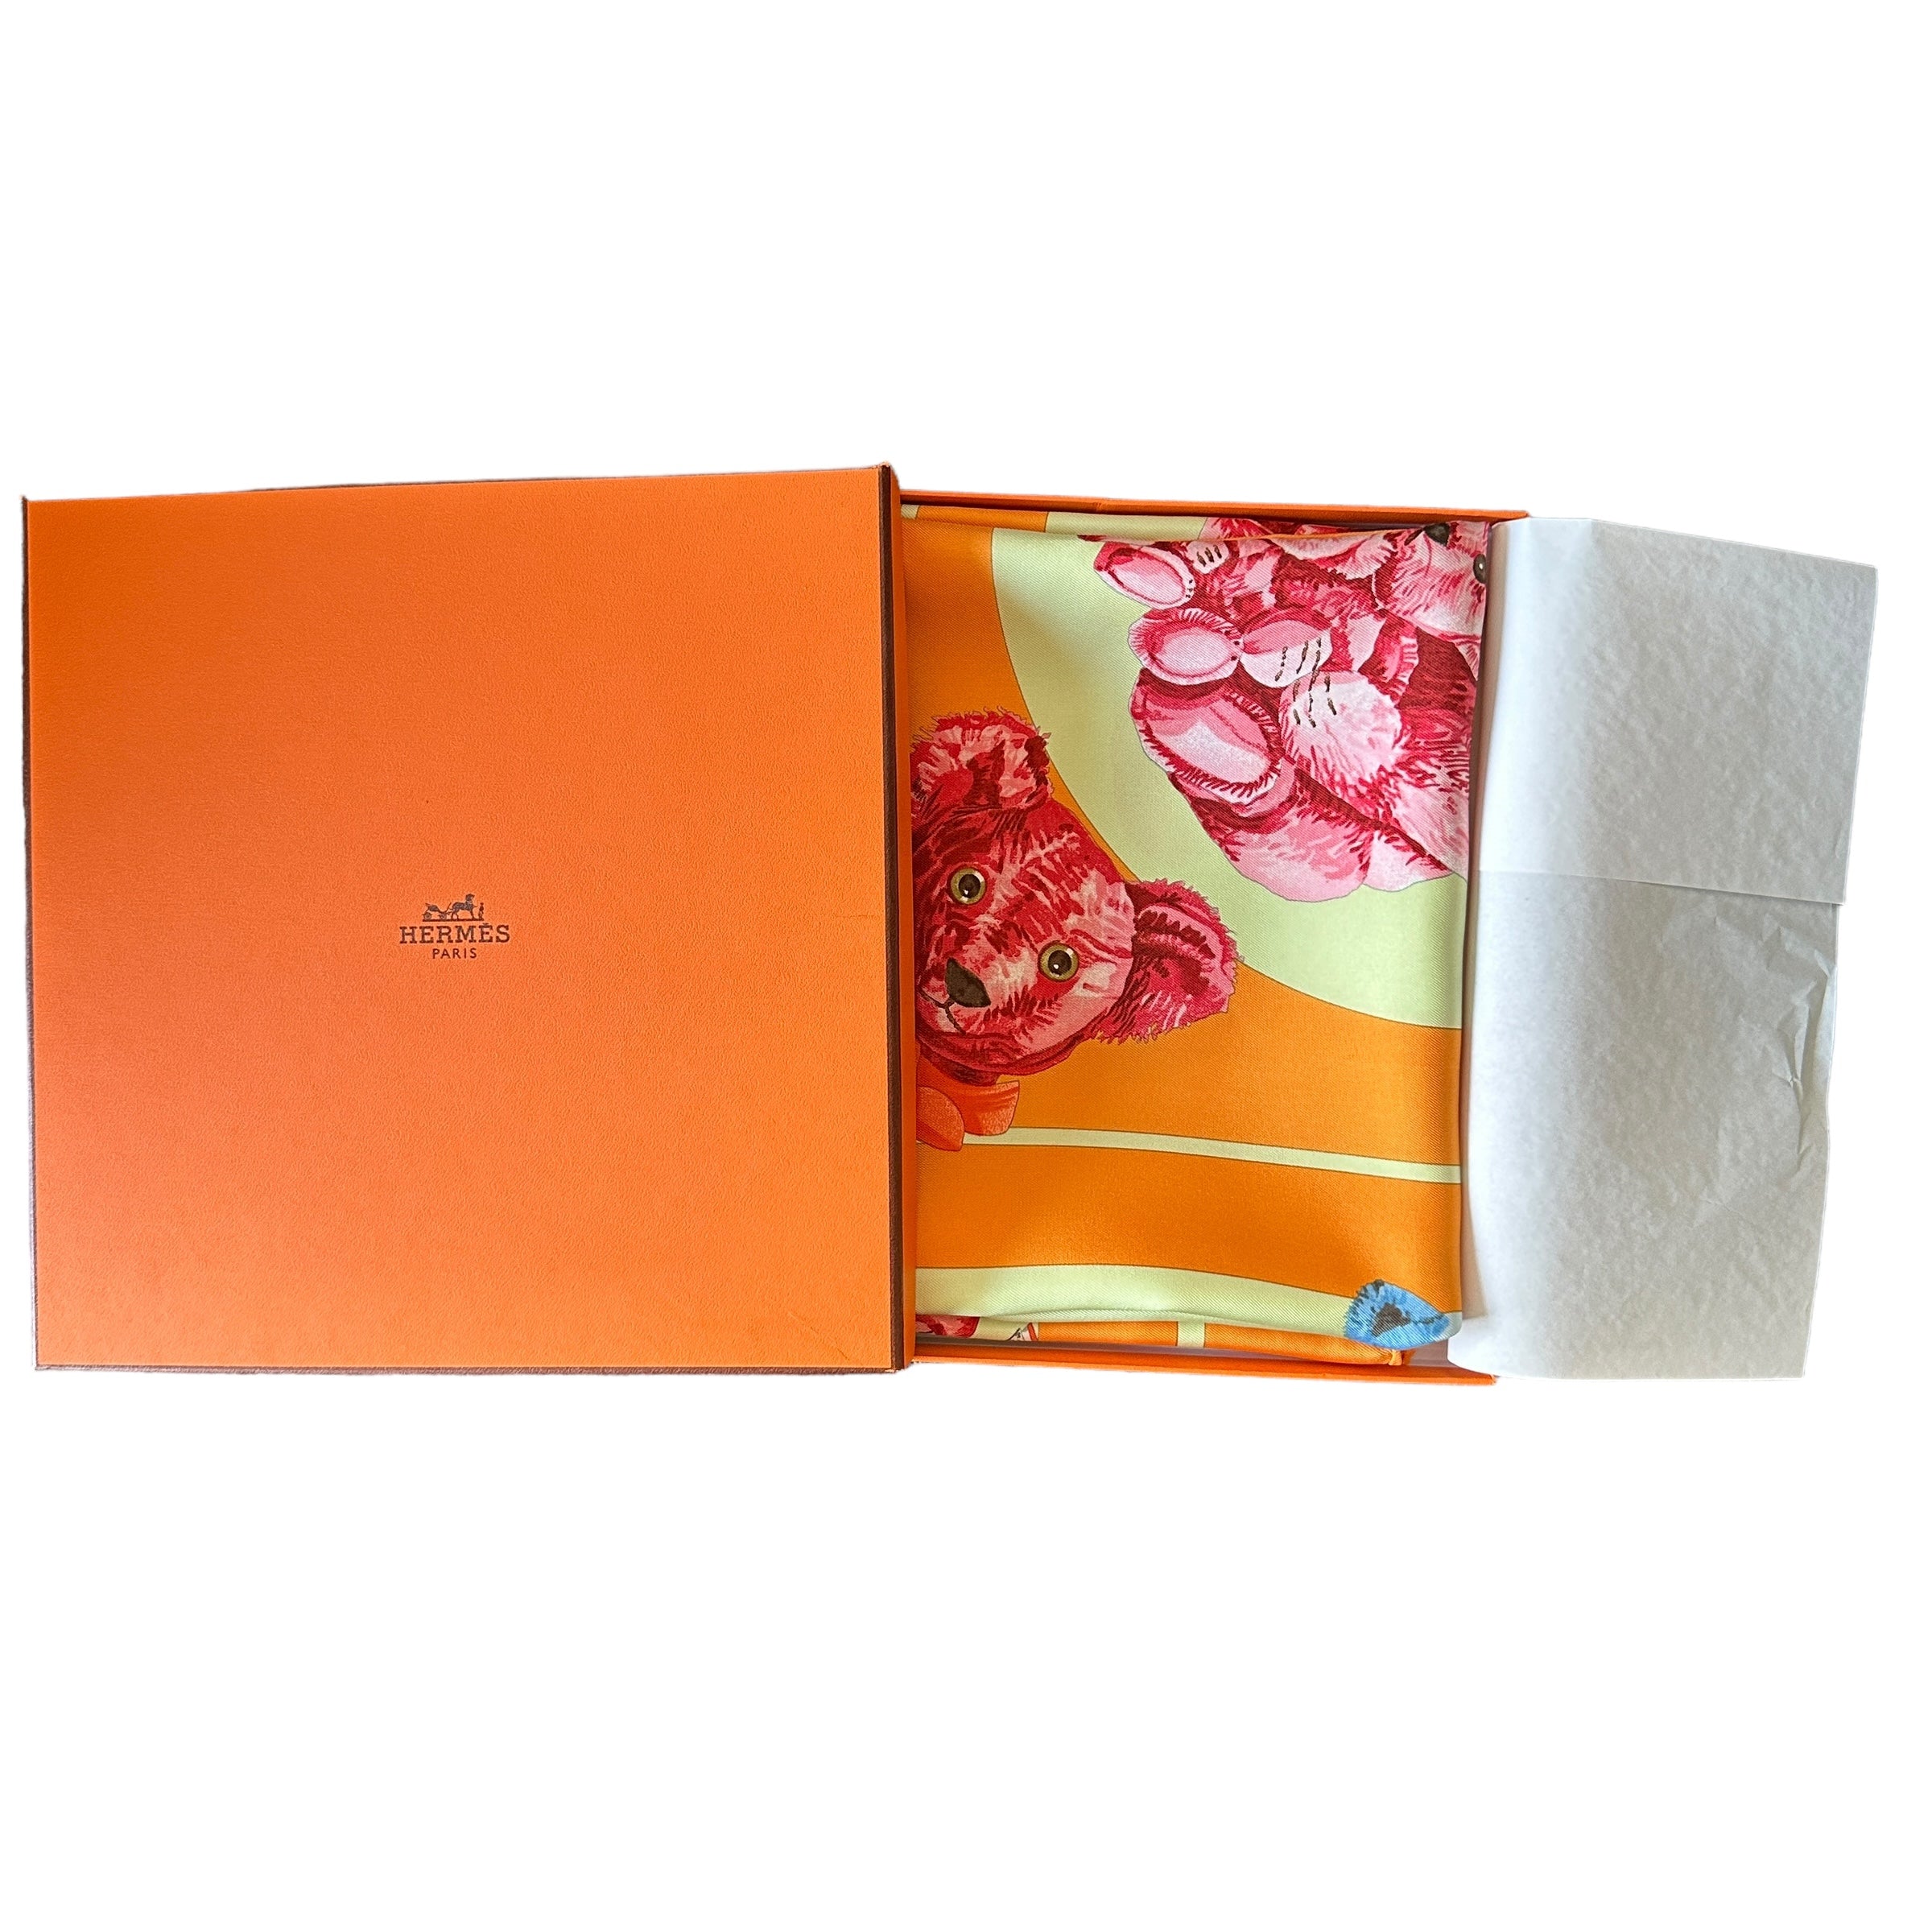 foulard-hermes-confidents-des-coeurs-avec-boite-orange-hermes